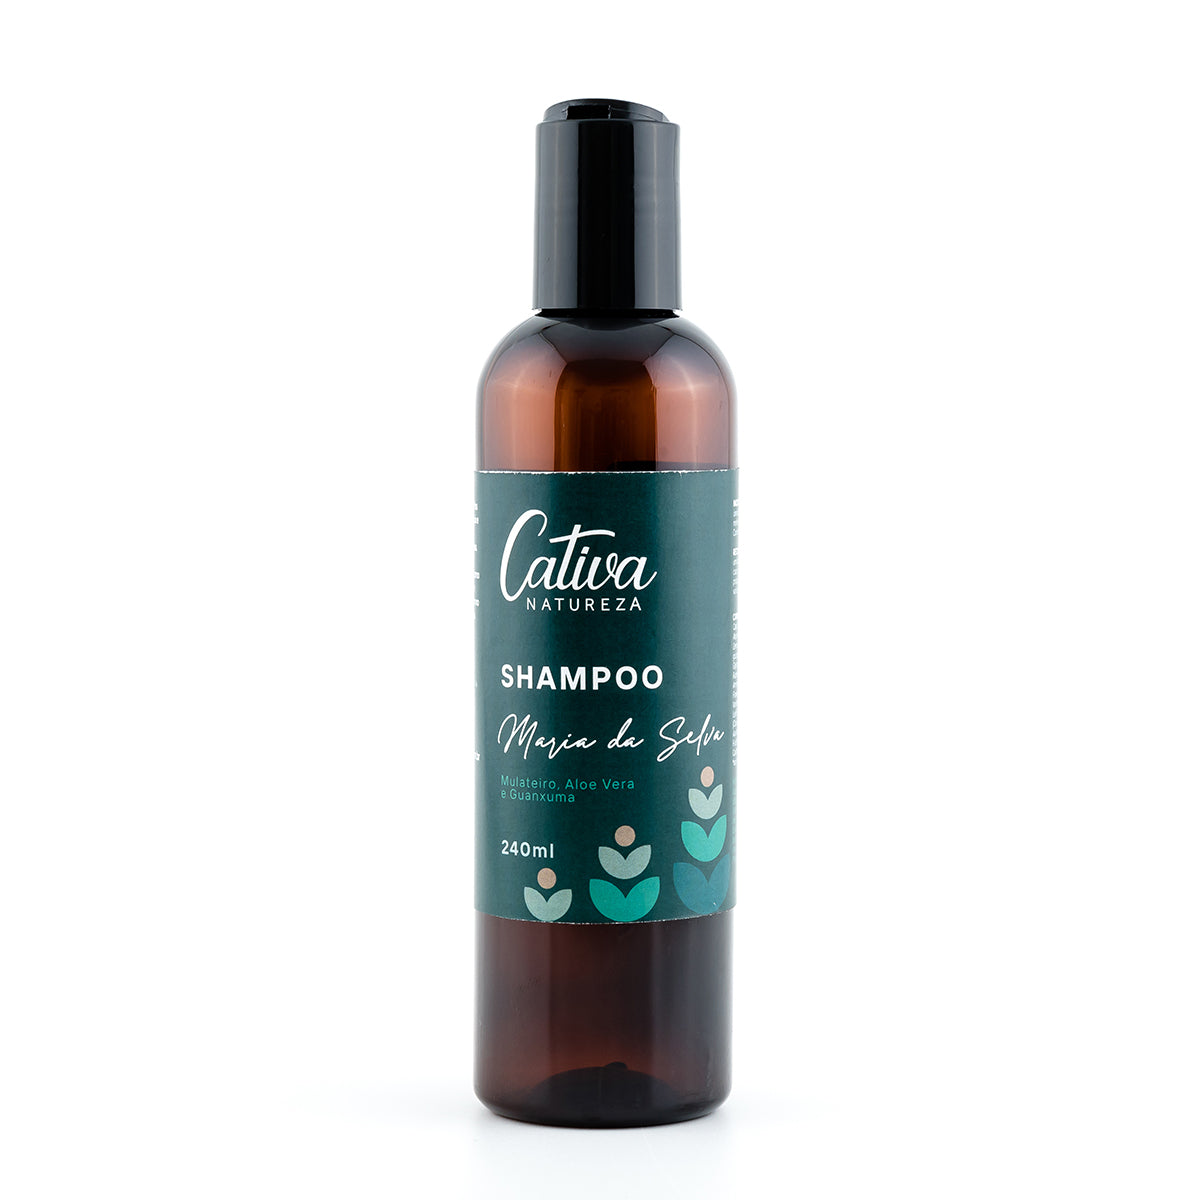 Shampoo Maria da Selva - Cativa - Frasco com 240ml - Mundo dos Óleos